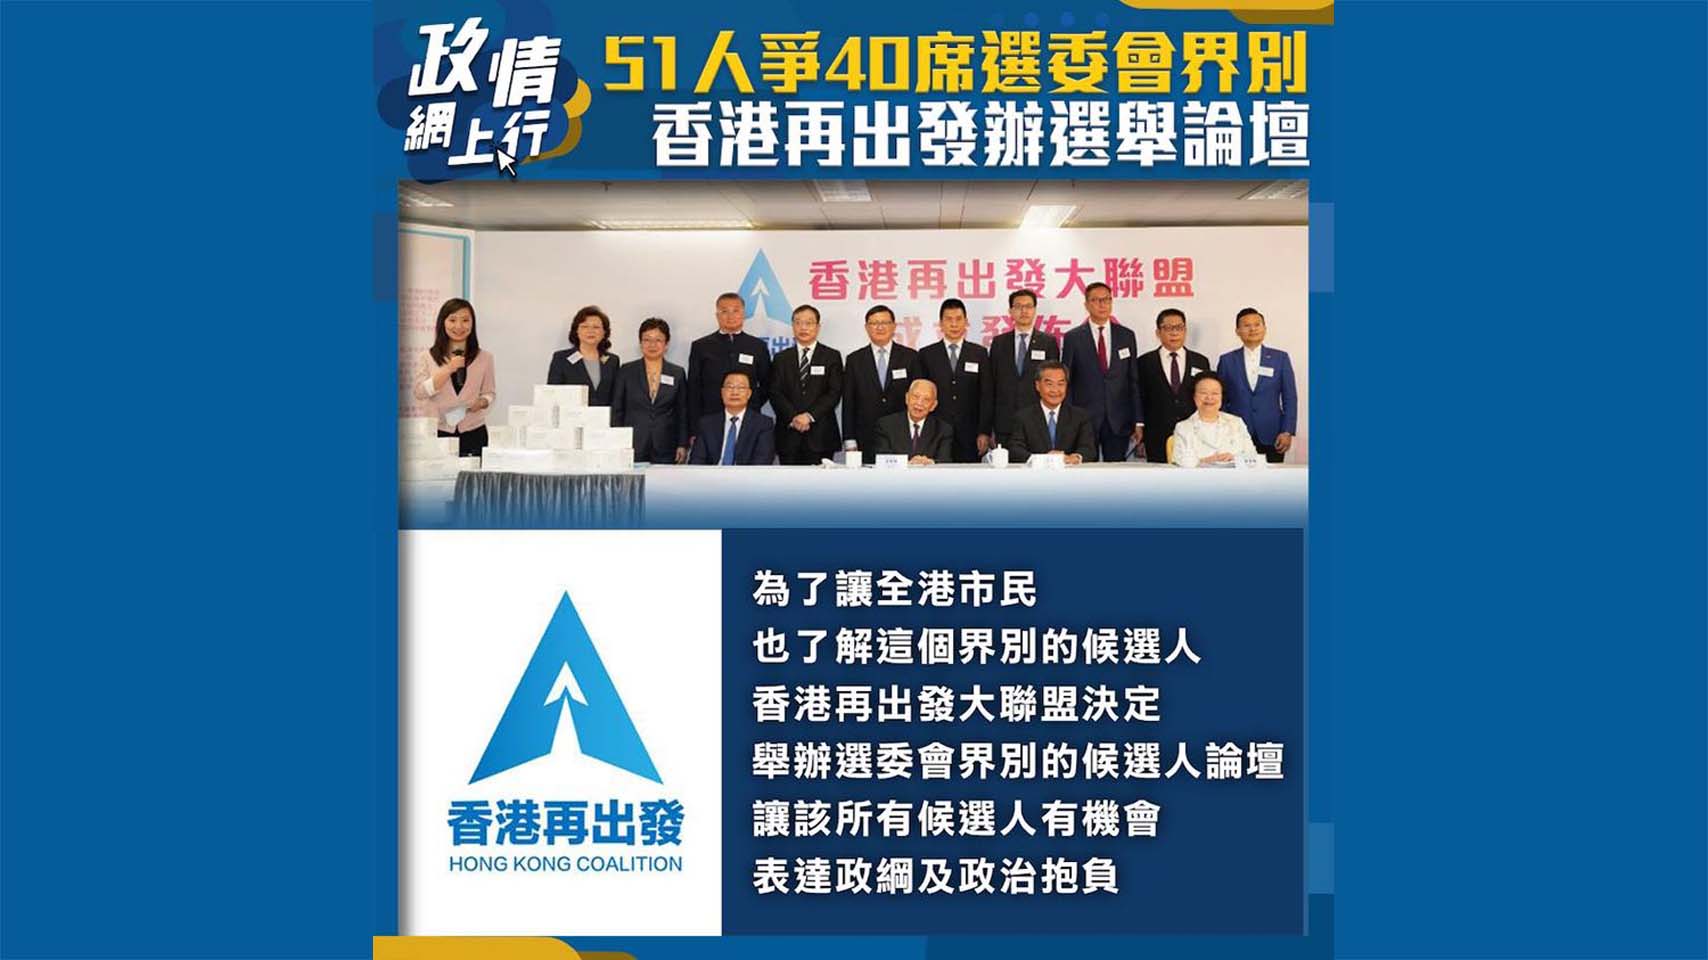 【政情網上行】51人爭40席選委會界別 香港再出發辦選舉論壇